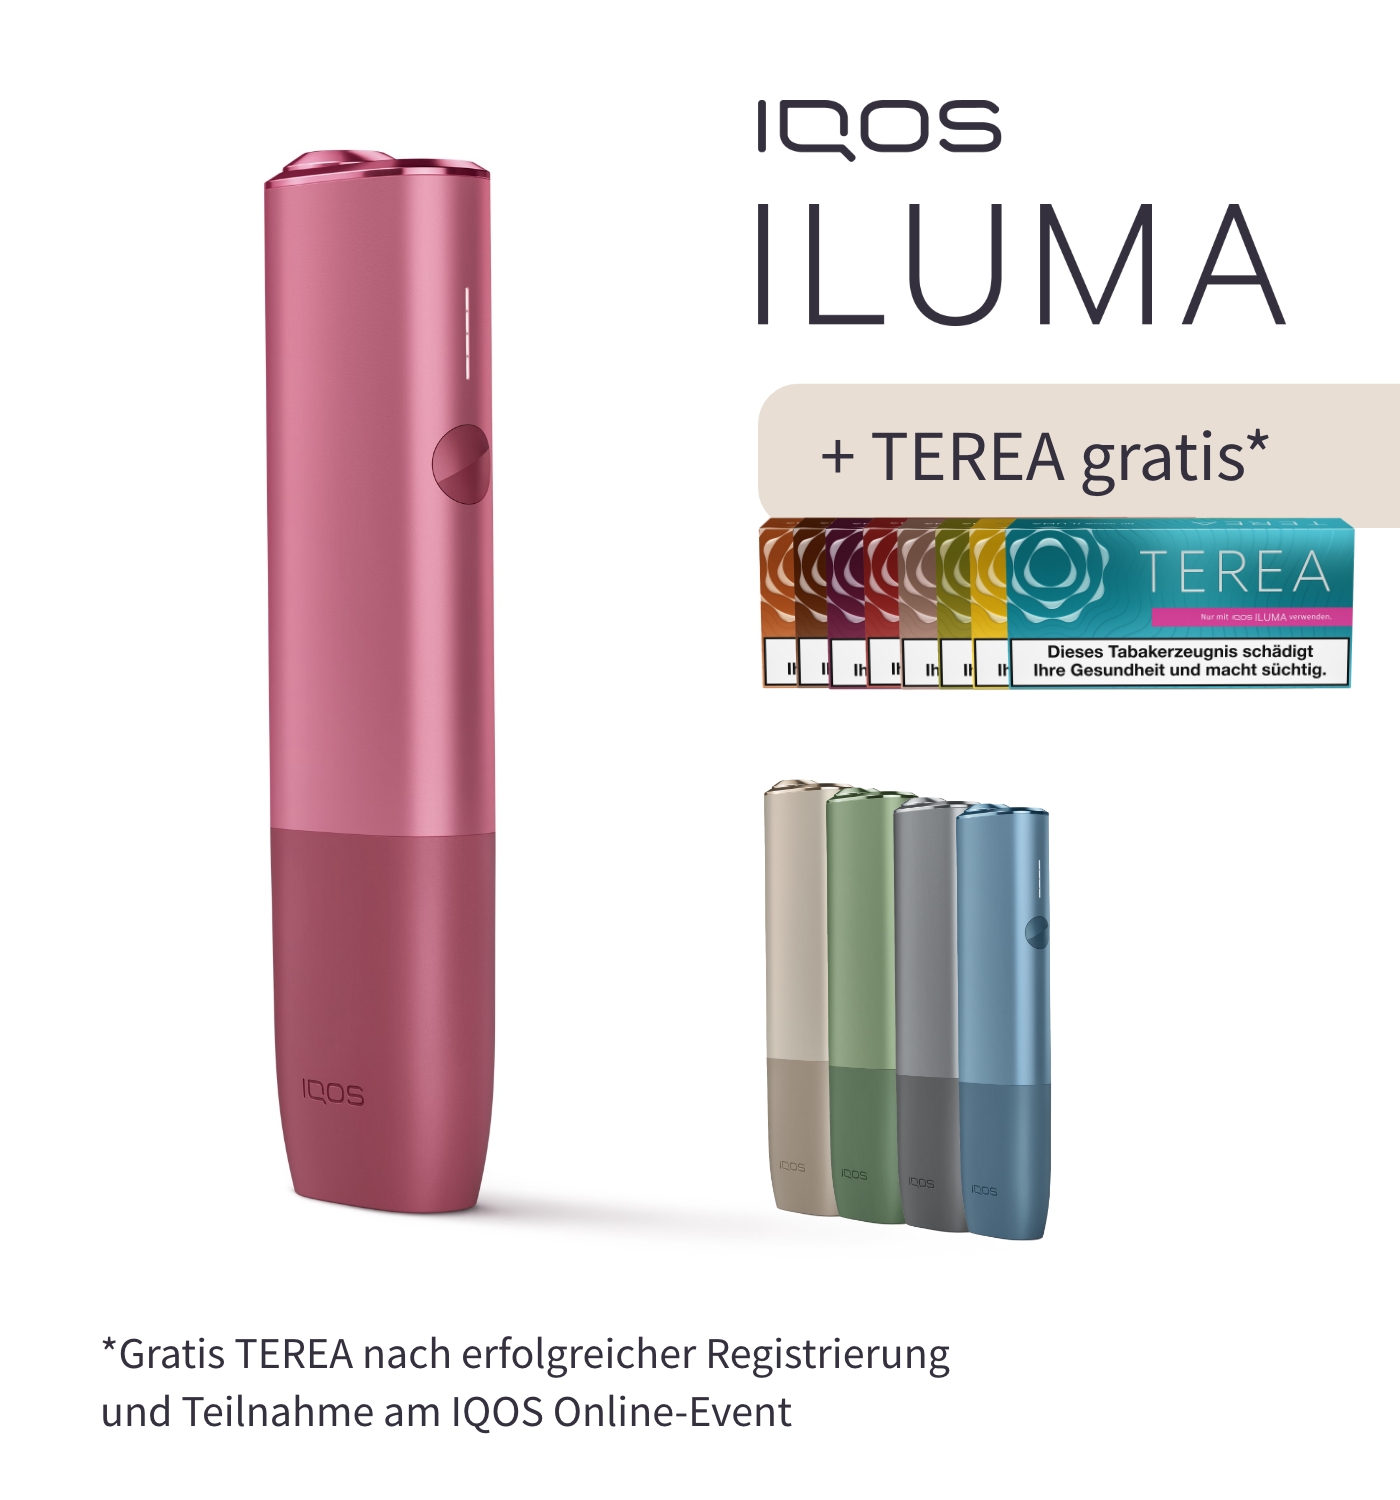 https://www.tabak-boerse24.de/media/image/55/81/62/IQOS_ILUMA_ONE_Sunset_Red_inklusive_TEREA_Gratis_SW15161.jpg